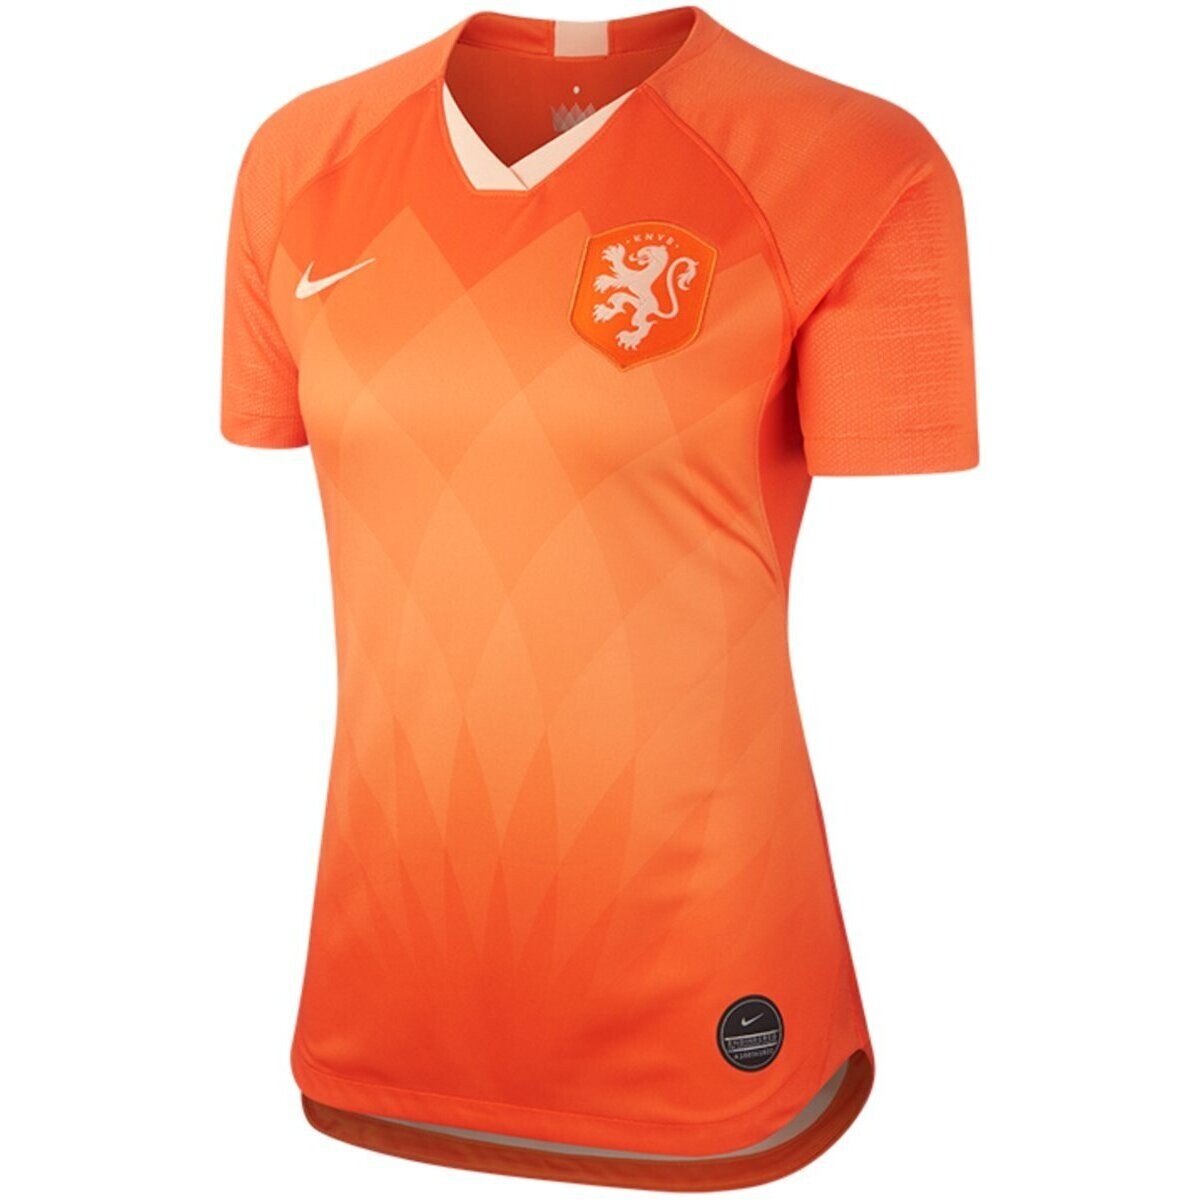 Vêtements Femme T-shirts manches courtes Nike  Orange